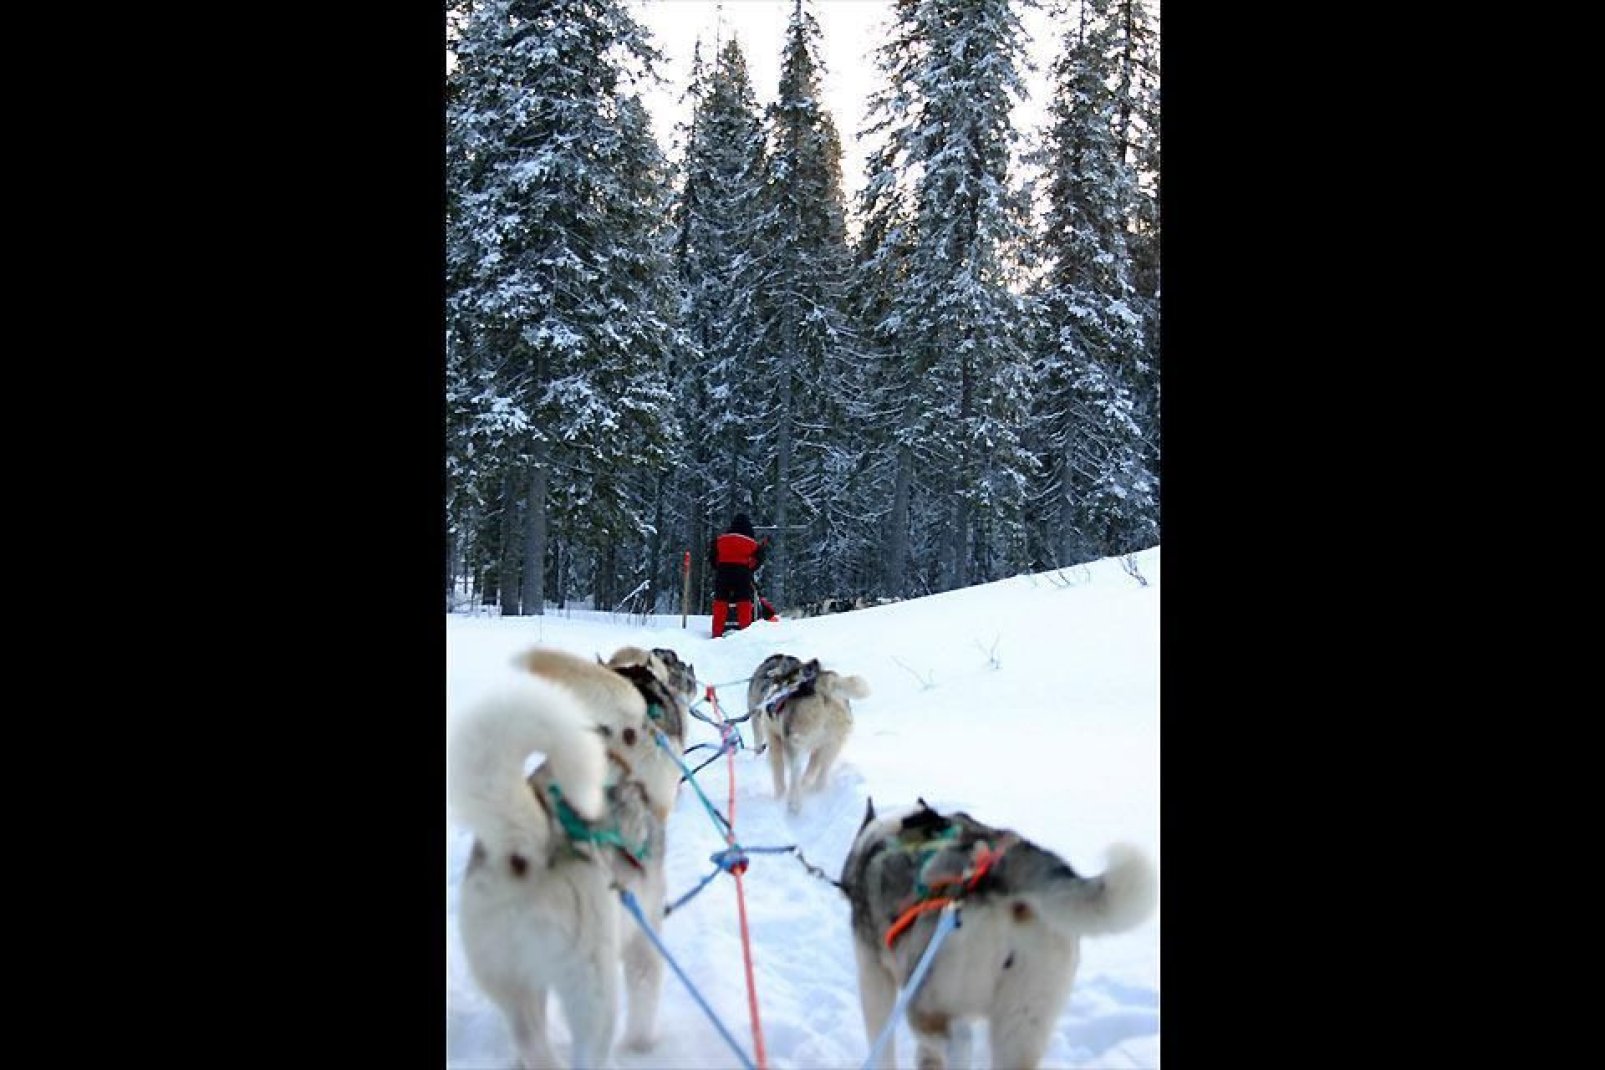 Il est possible de rejoindre le célèbre hôtel de glace de Kemi, le château de glace, en chiens de traîneaux. Une randonnée inoubliable.